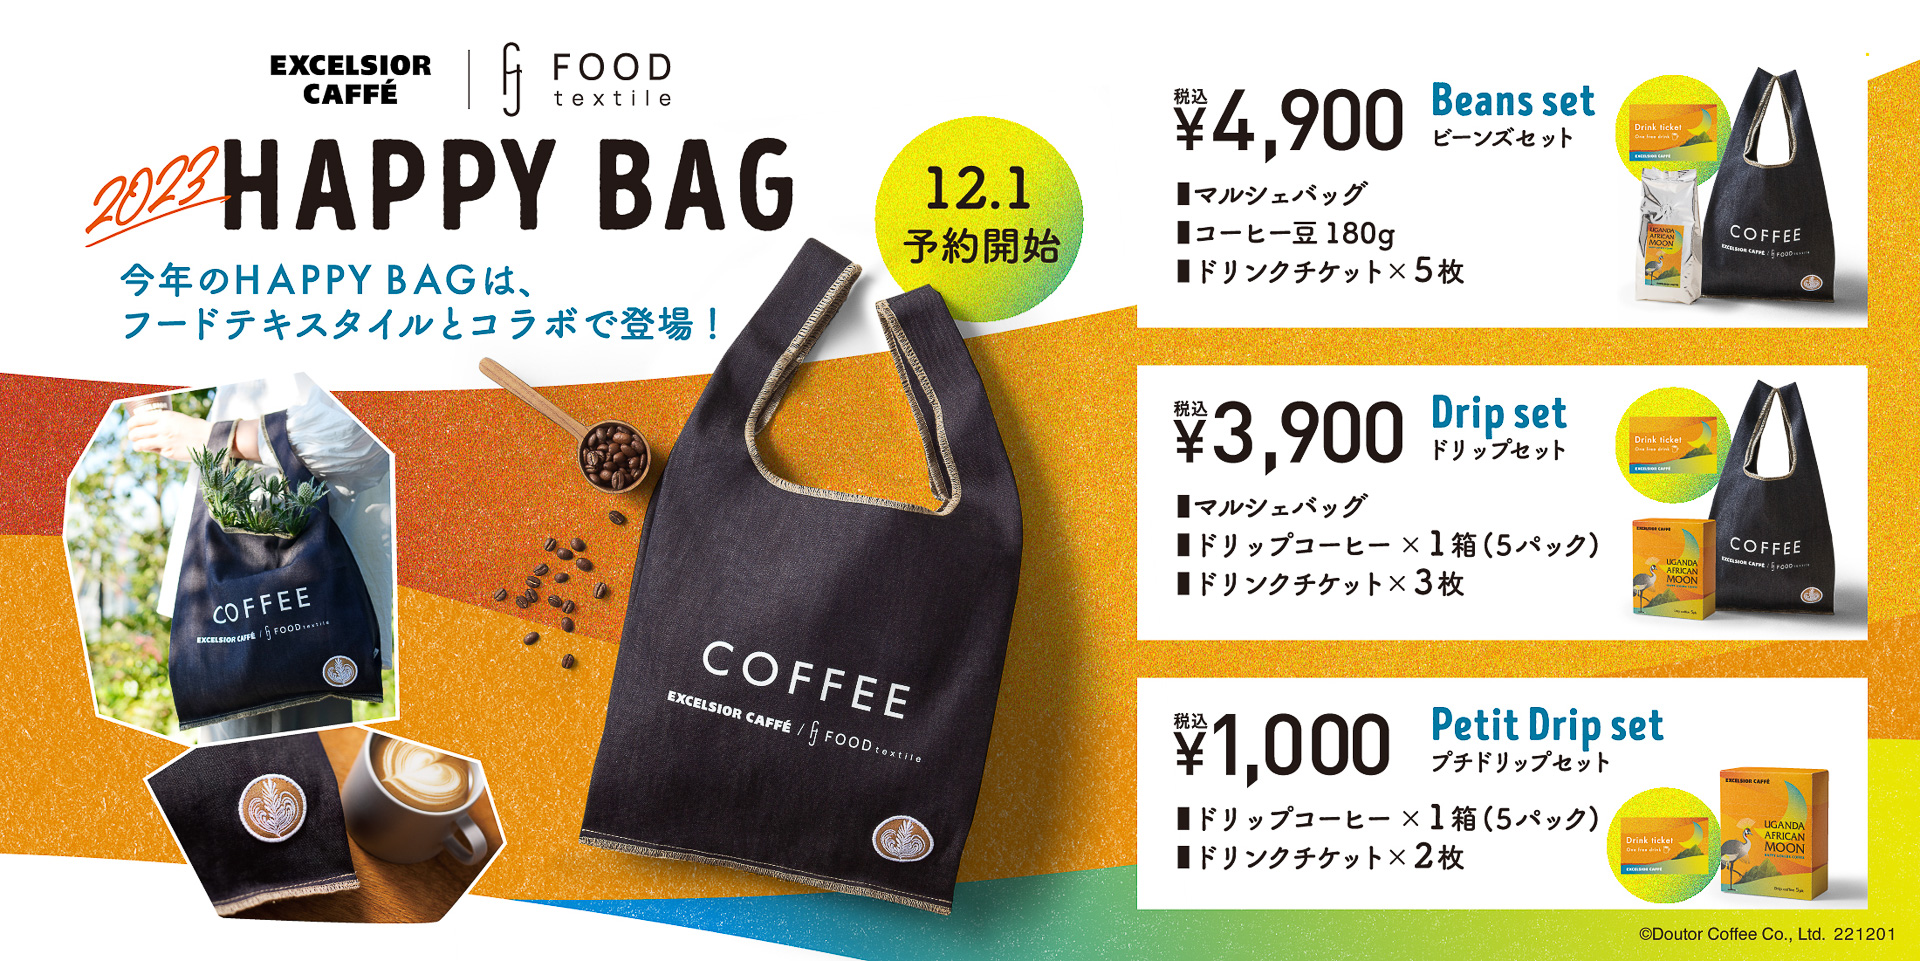 エクセルシオール カフェ、福袋「2023 HAPPY BAG」は12月1日予約受付